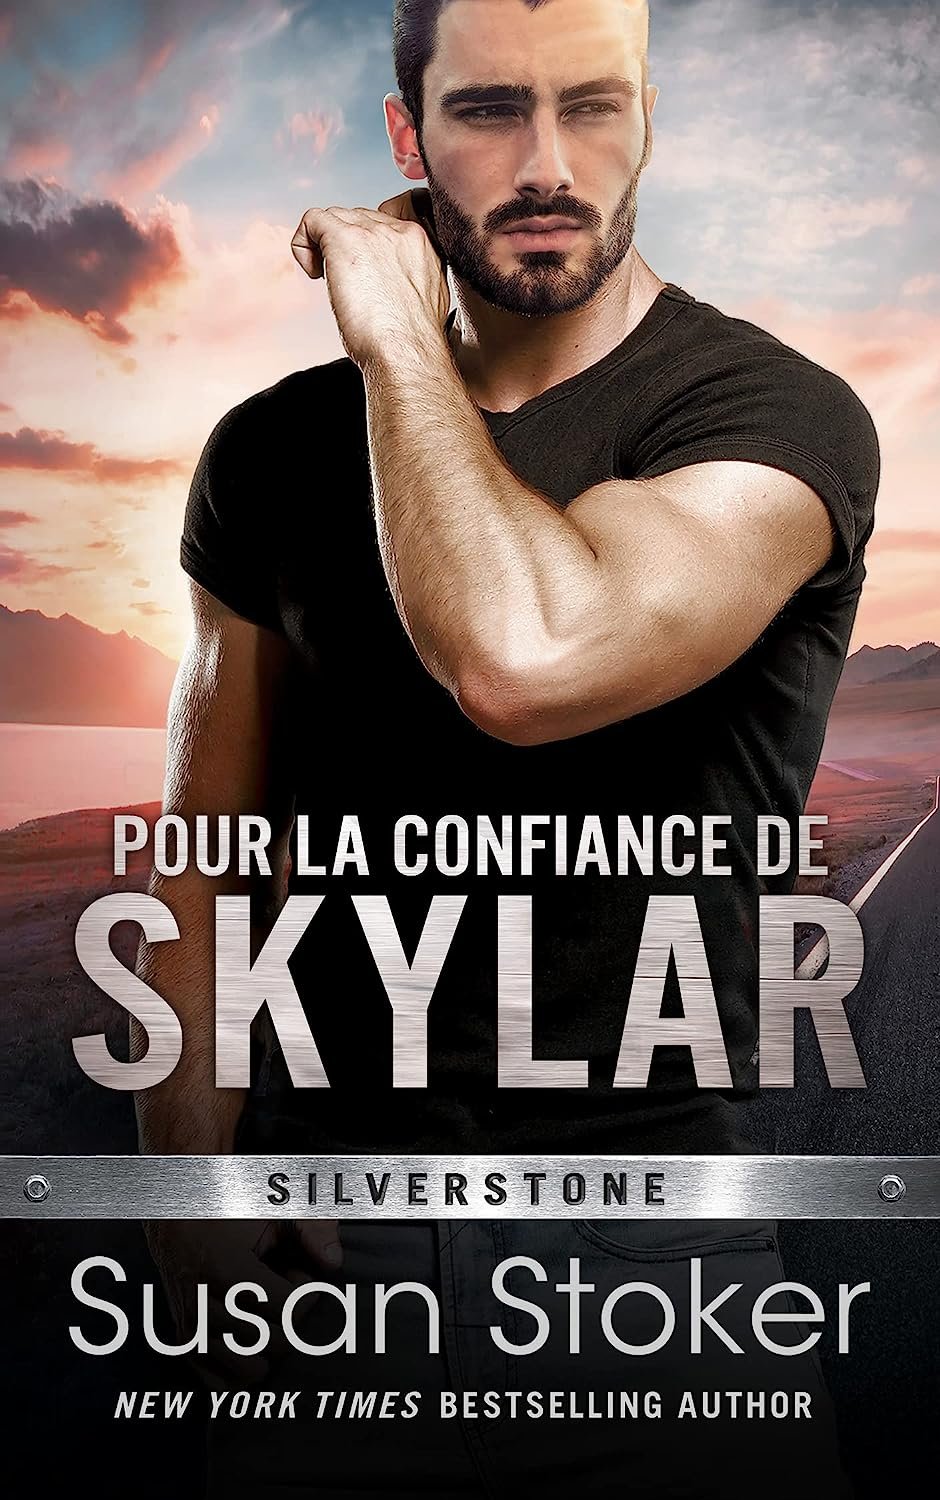 Susan Stoker - Silverstone, Tome 1 - Pour la confiance de Skylar